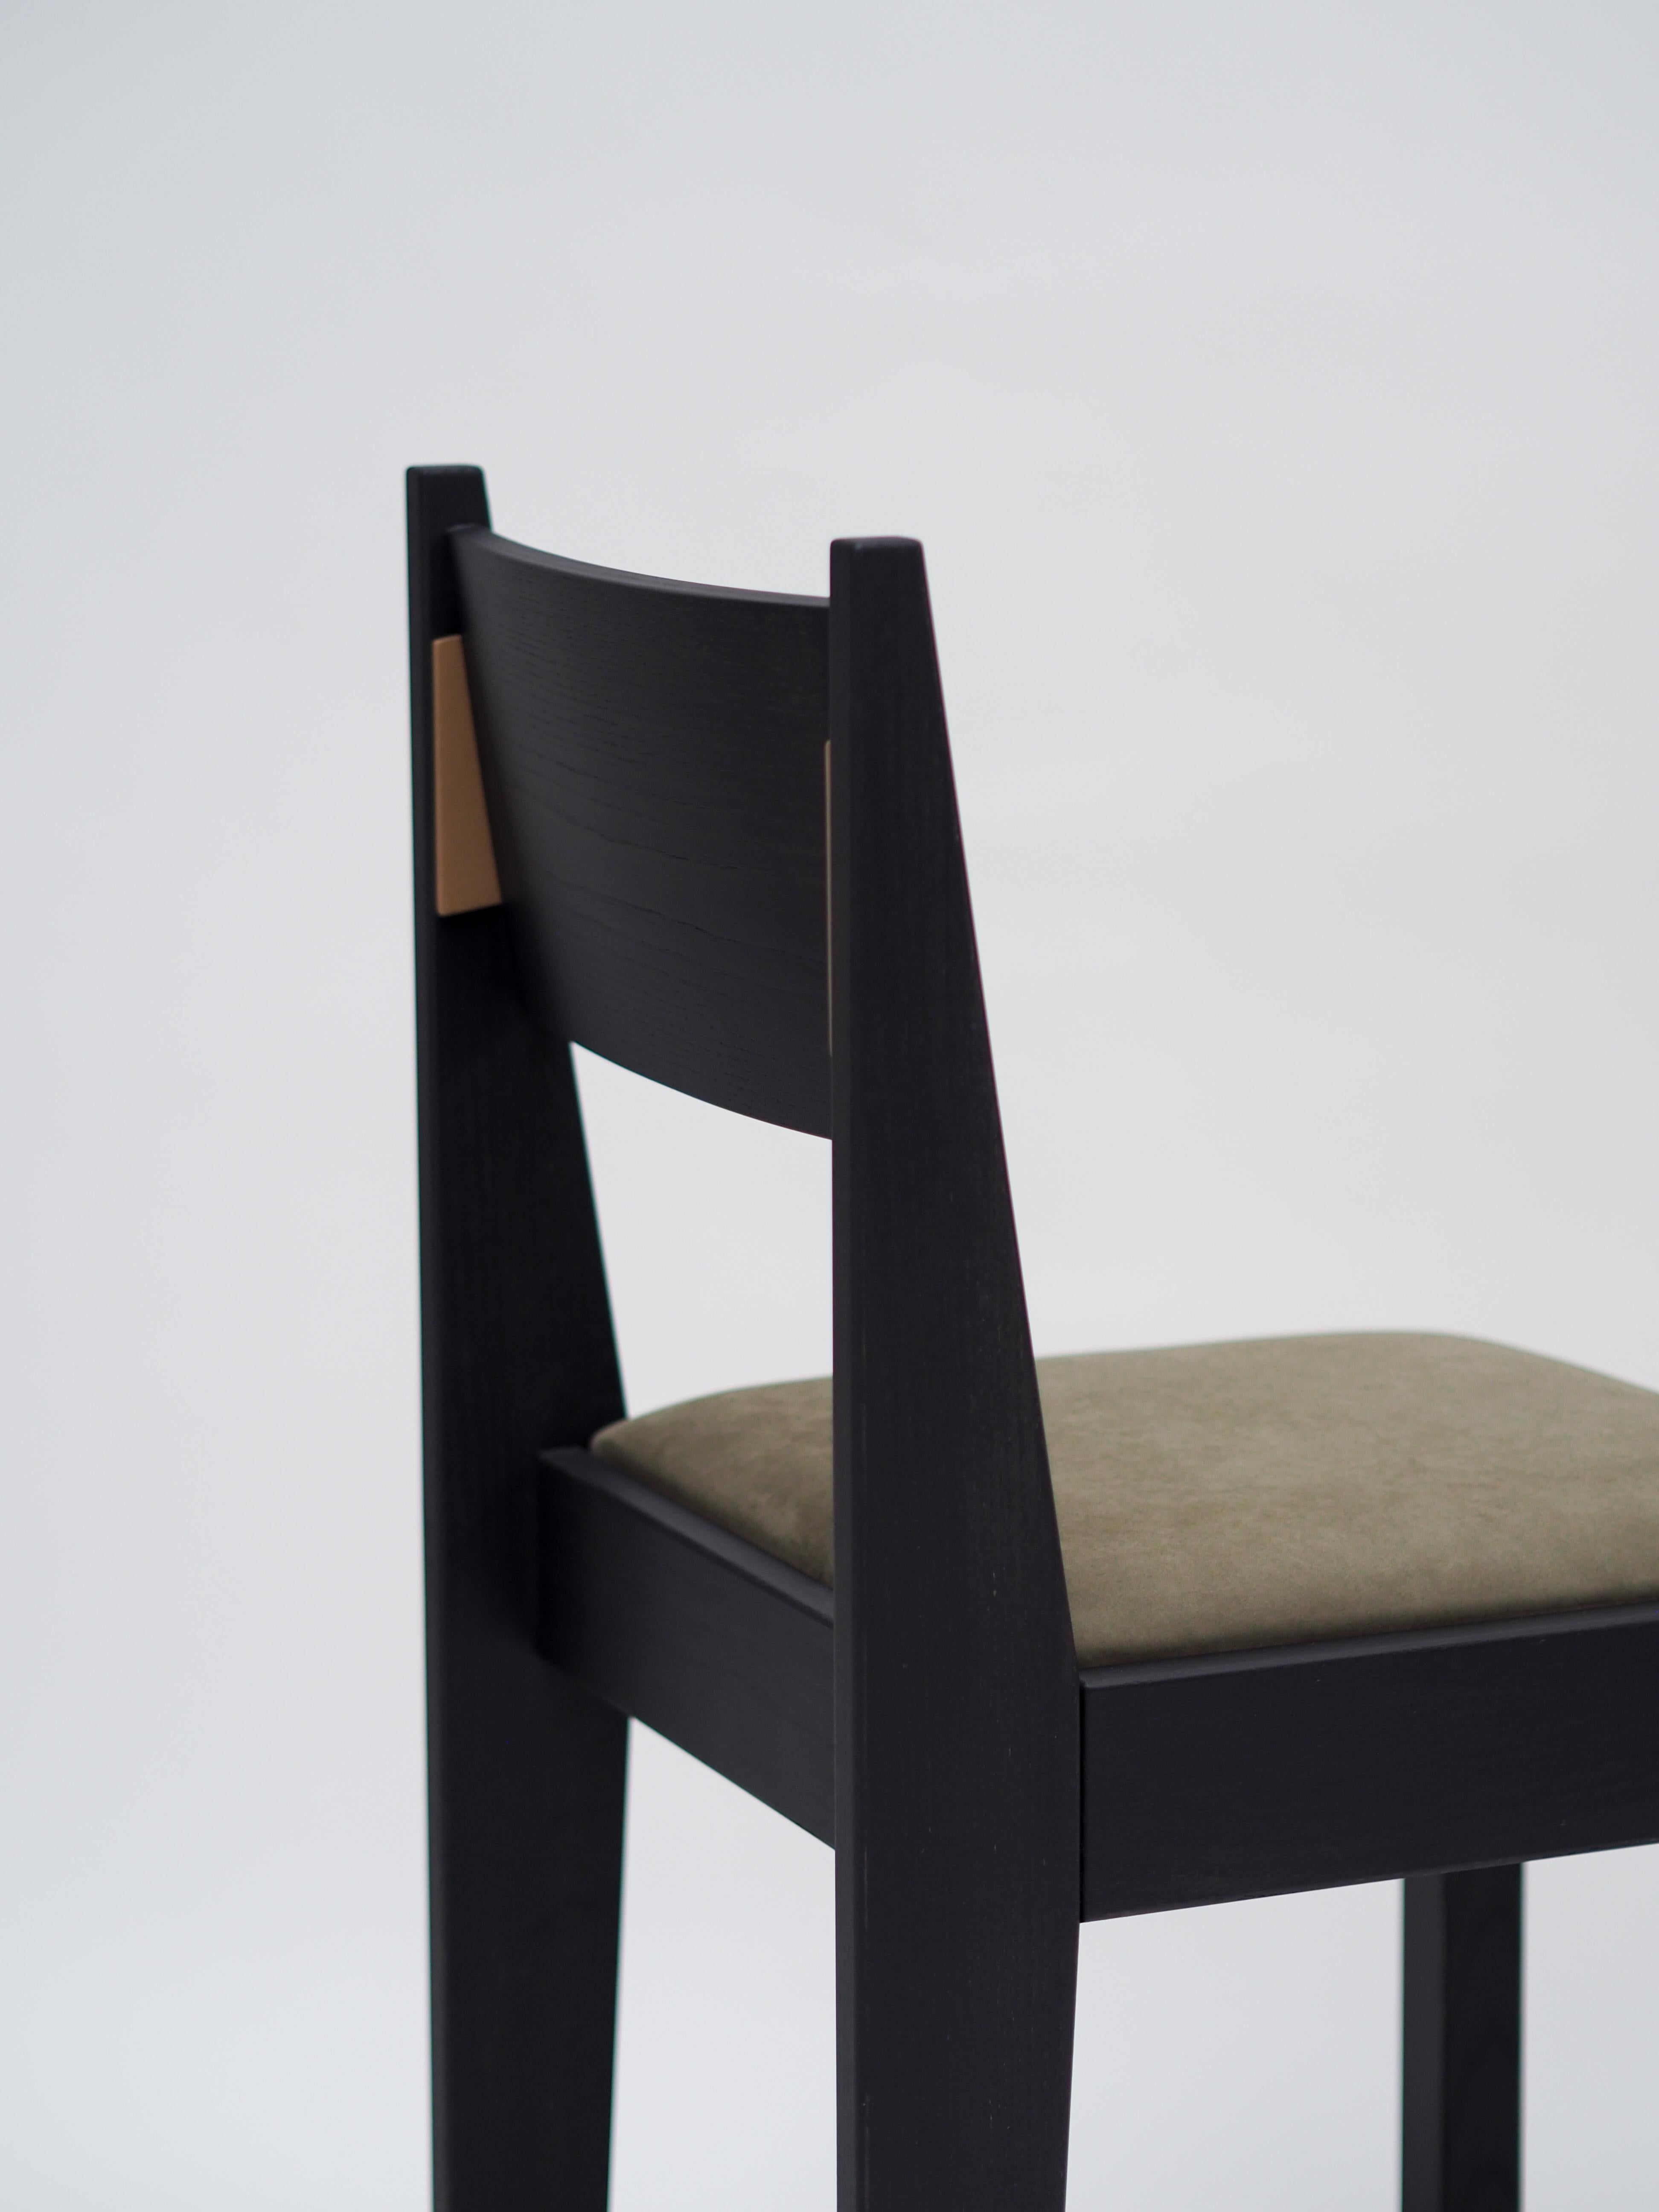 Unser barh Stuhl 01 ist ein klassisches, modernes Design mit feinsten Details. Der von der Art-Déco-Bewegung inspirierte Stuhl sieht vertraut aus, ist zeitlos und passt zu fast jeder Einrichtung. Um das Gesamtbild von barh zu vervollständigen,